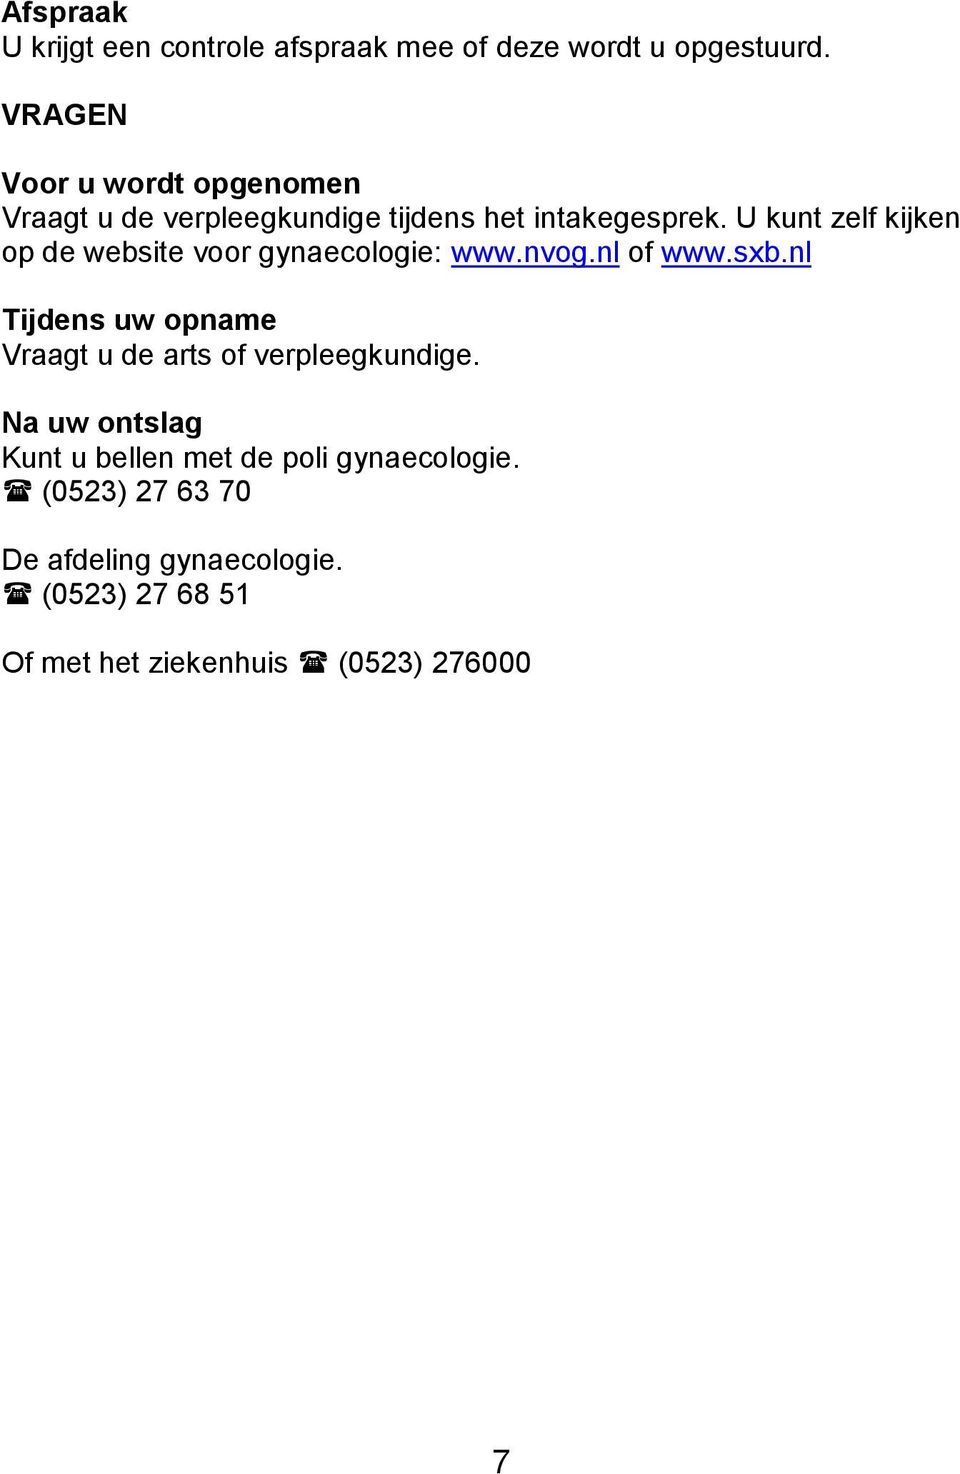 U kunt zelf kijken op de website voor gynaecologie: www.nvog.nl of www.sxb.